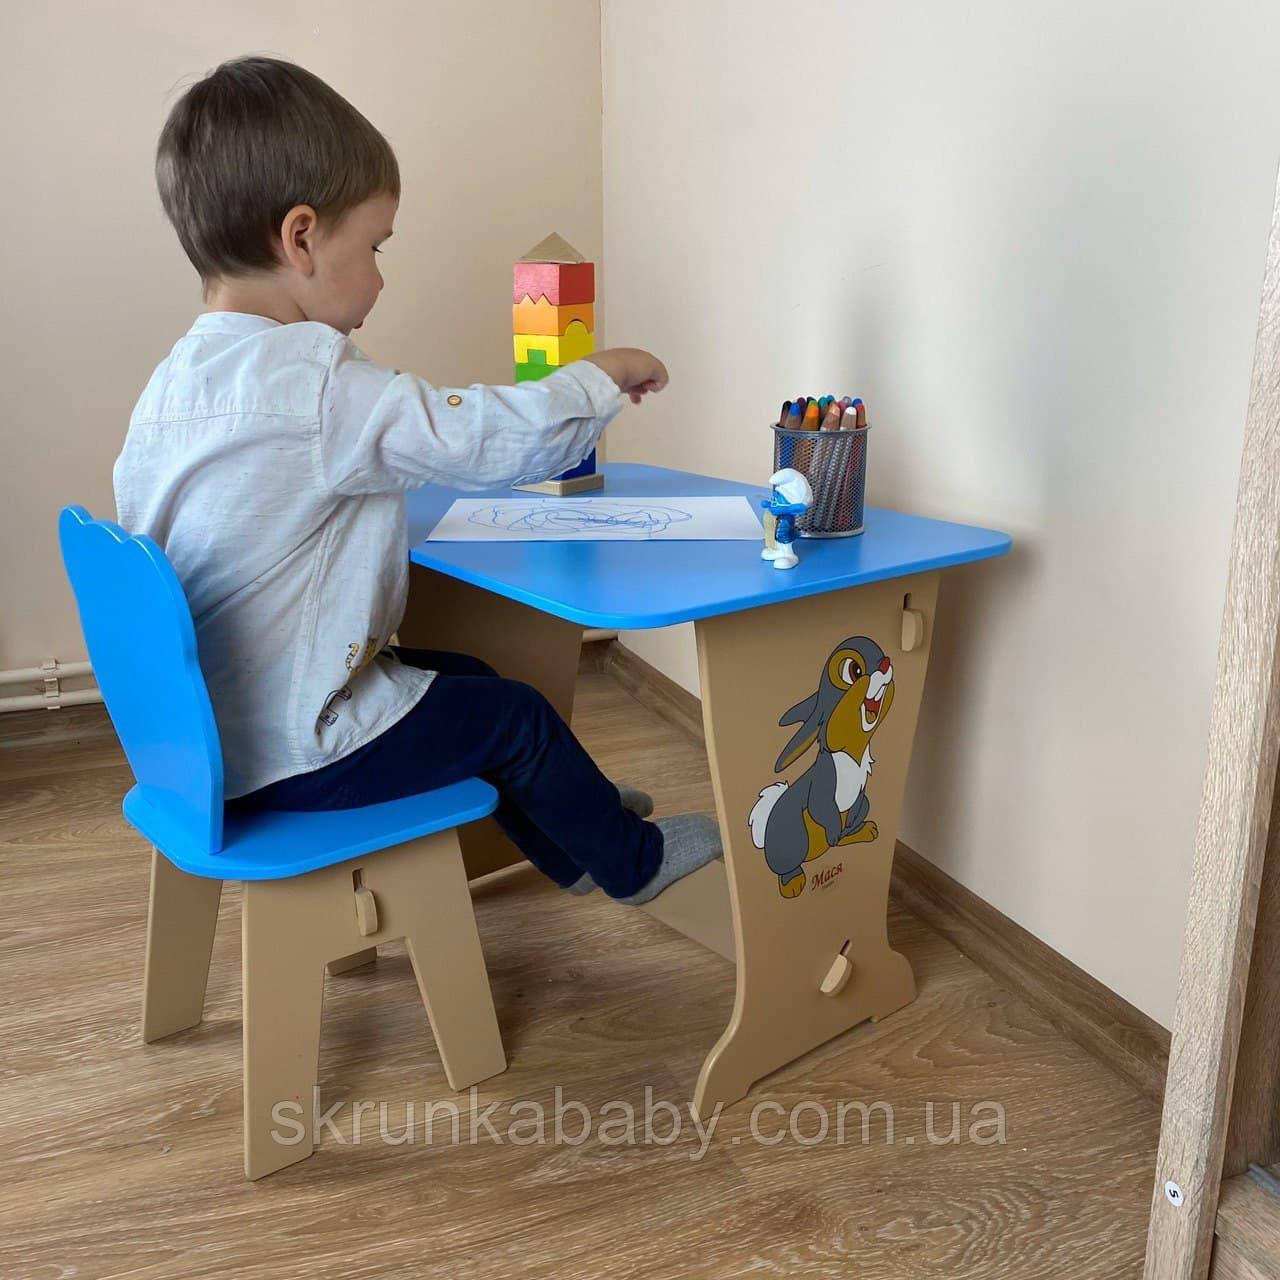 Дитячий стол-парта малюнок зайчик і стільчик дитячий ведмежатко.Для гри, малювання, навчання,.